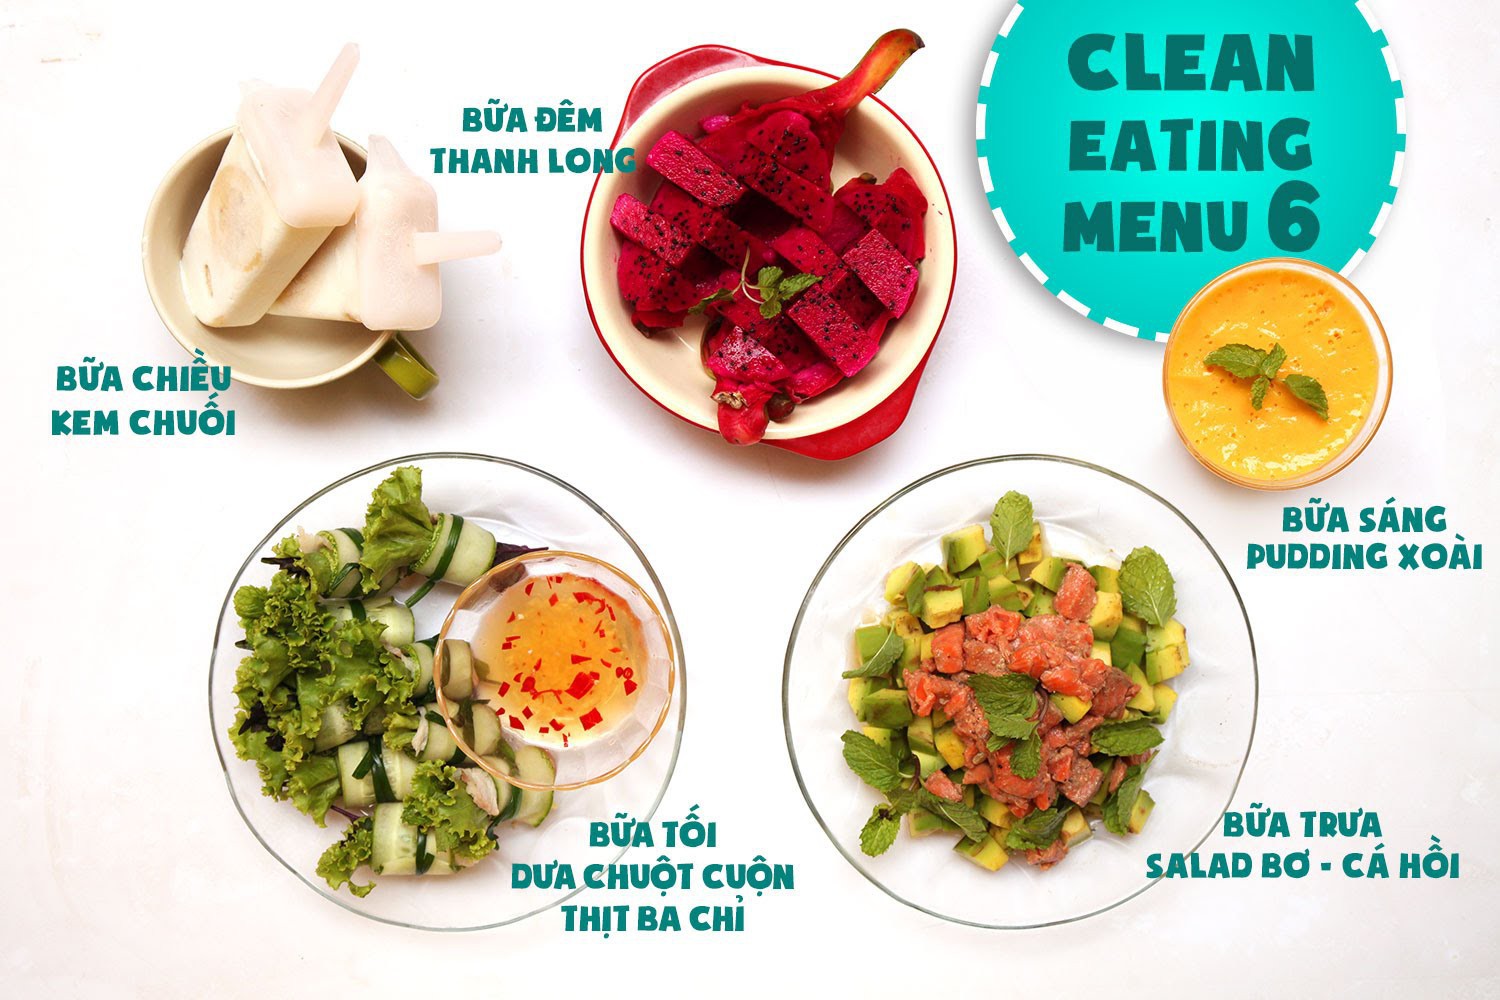 Gợi ý thực đơn 7 ngày đầu Eat Clean với nhiều món ăn quen thuộc của người Việt Nam - Ảnh 5.